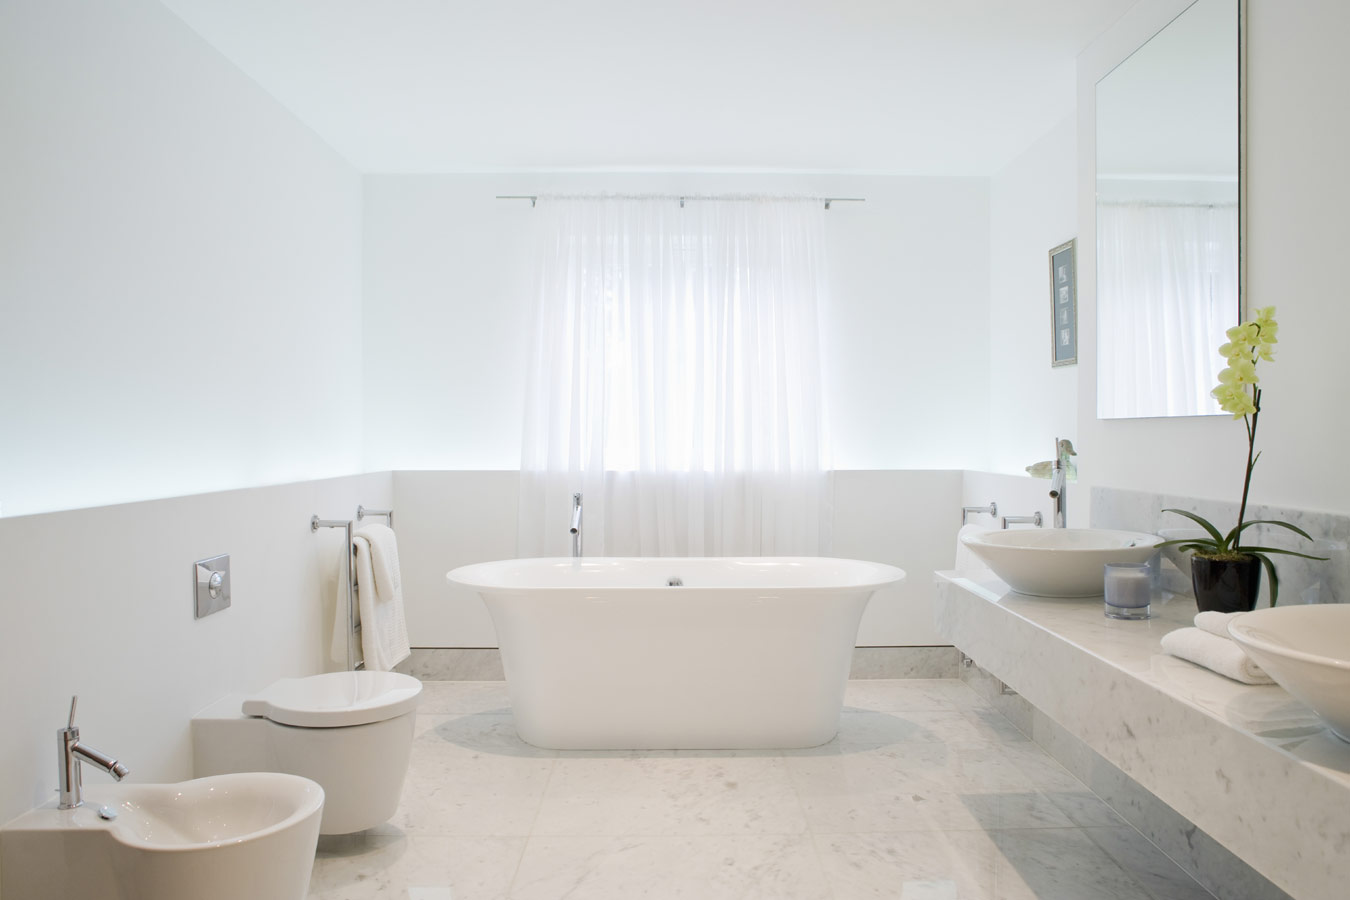 Wit vrijstaand bad in minimalistische badkamer - spanplafond